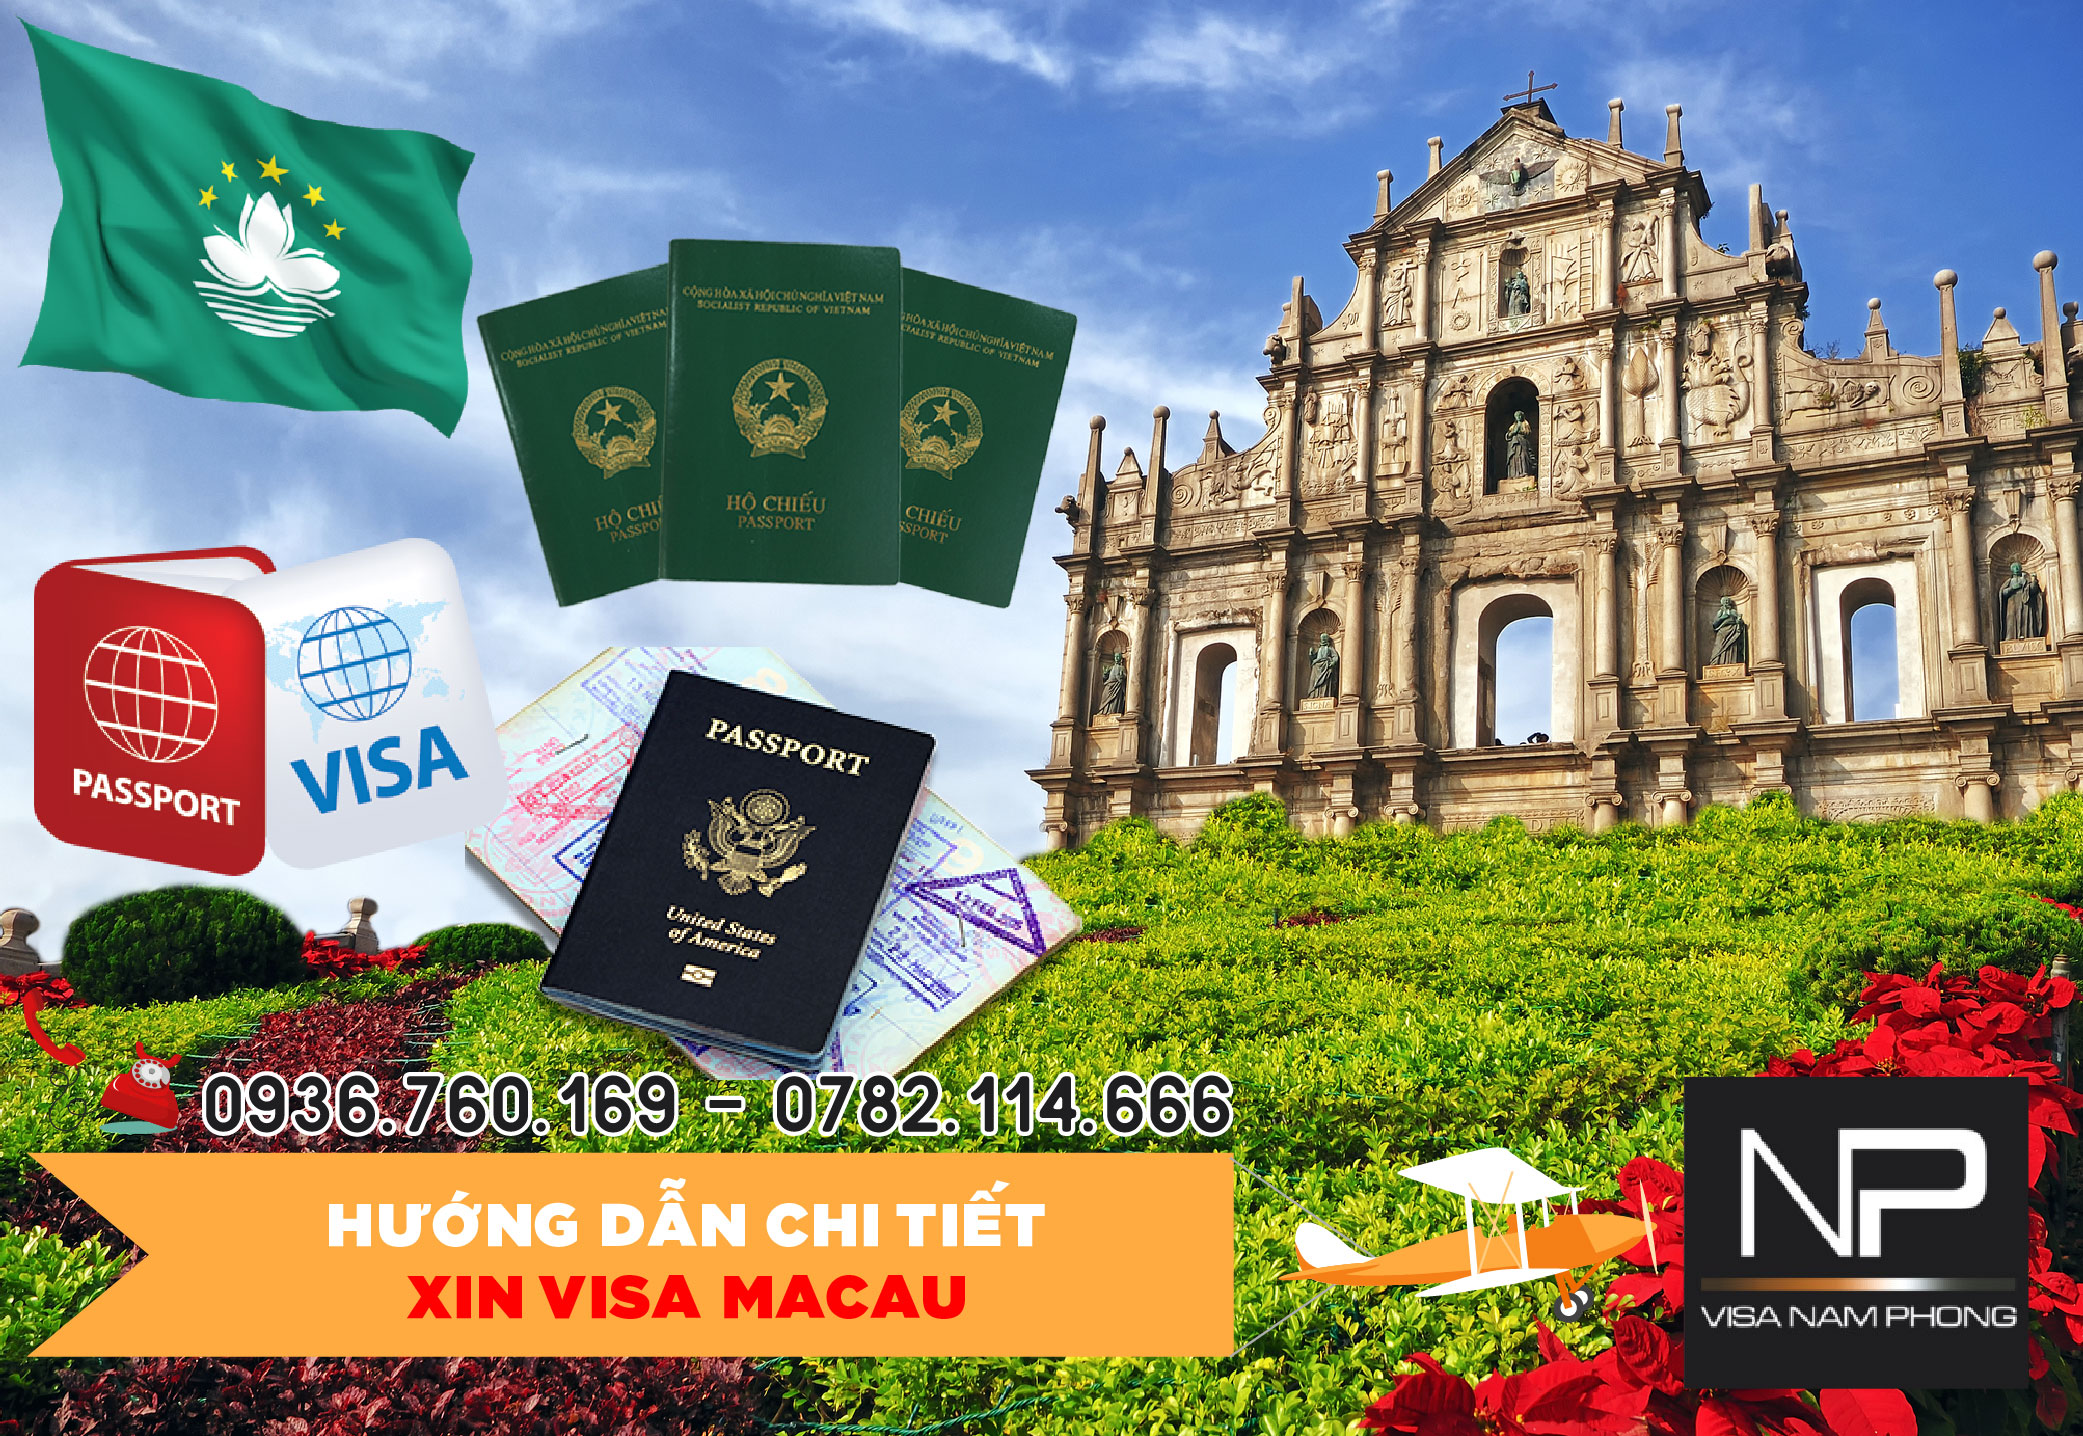 Visa du lịch giá rẻ chất lượng tại Hải Phòng